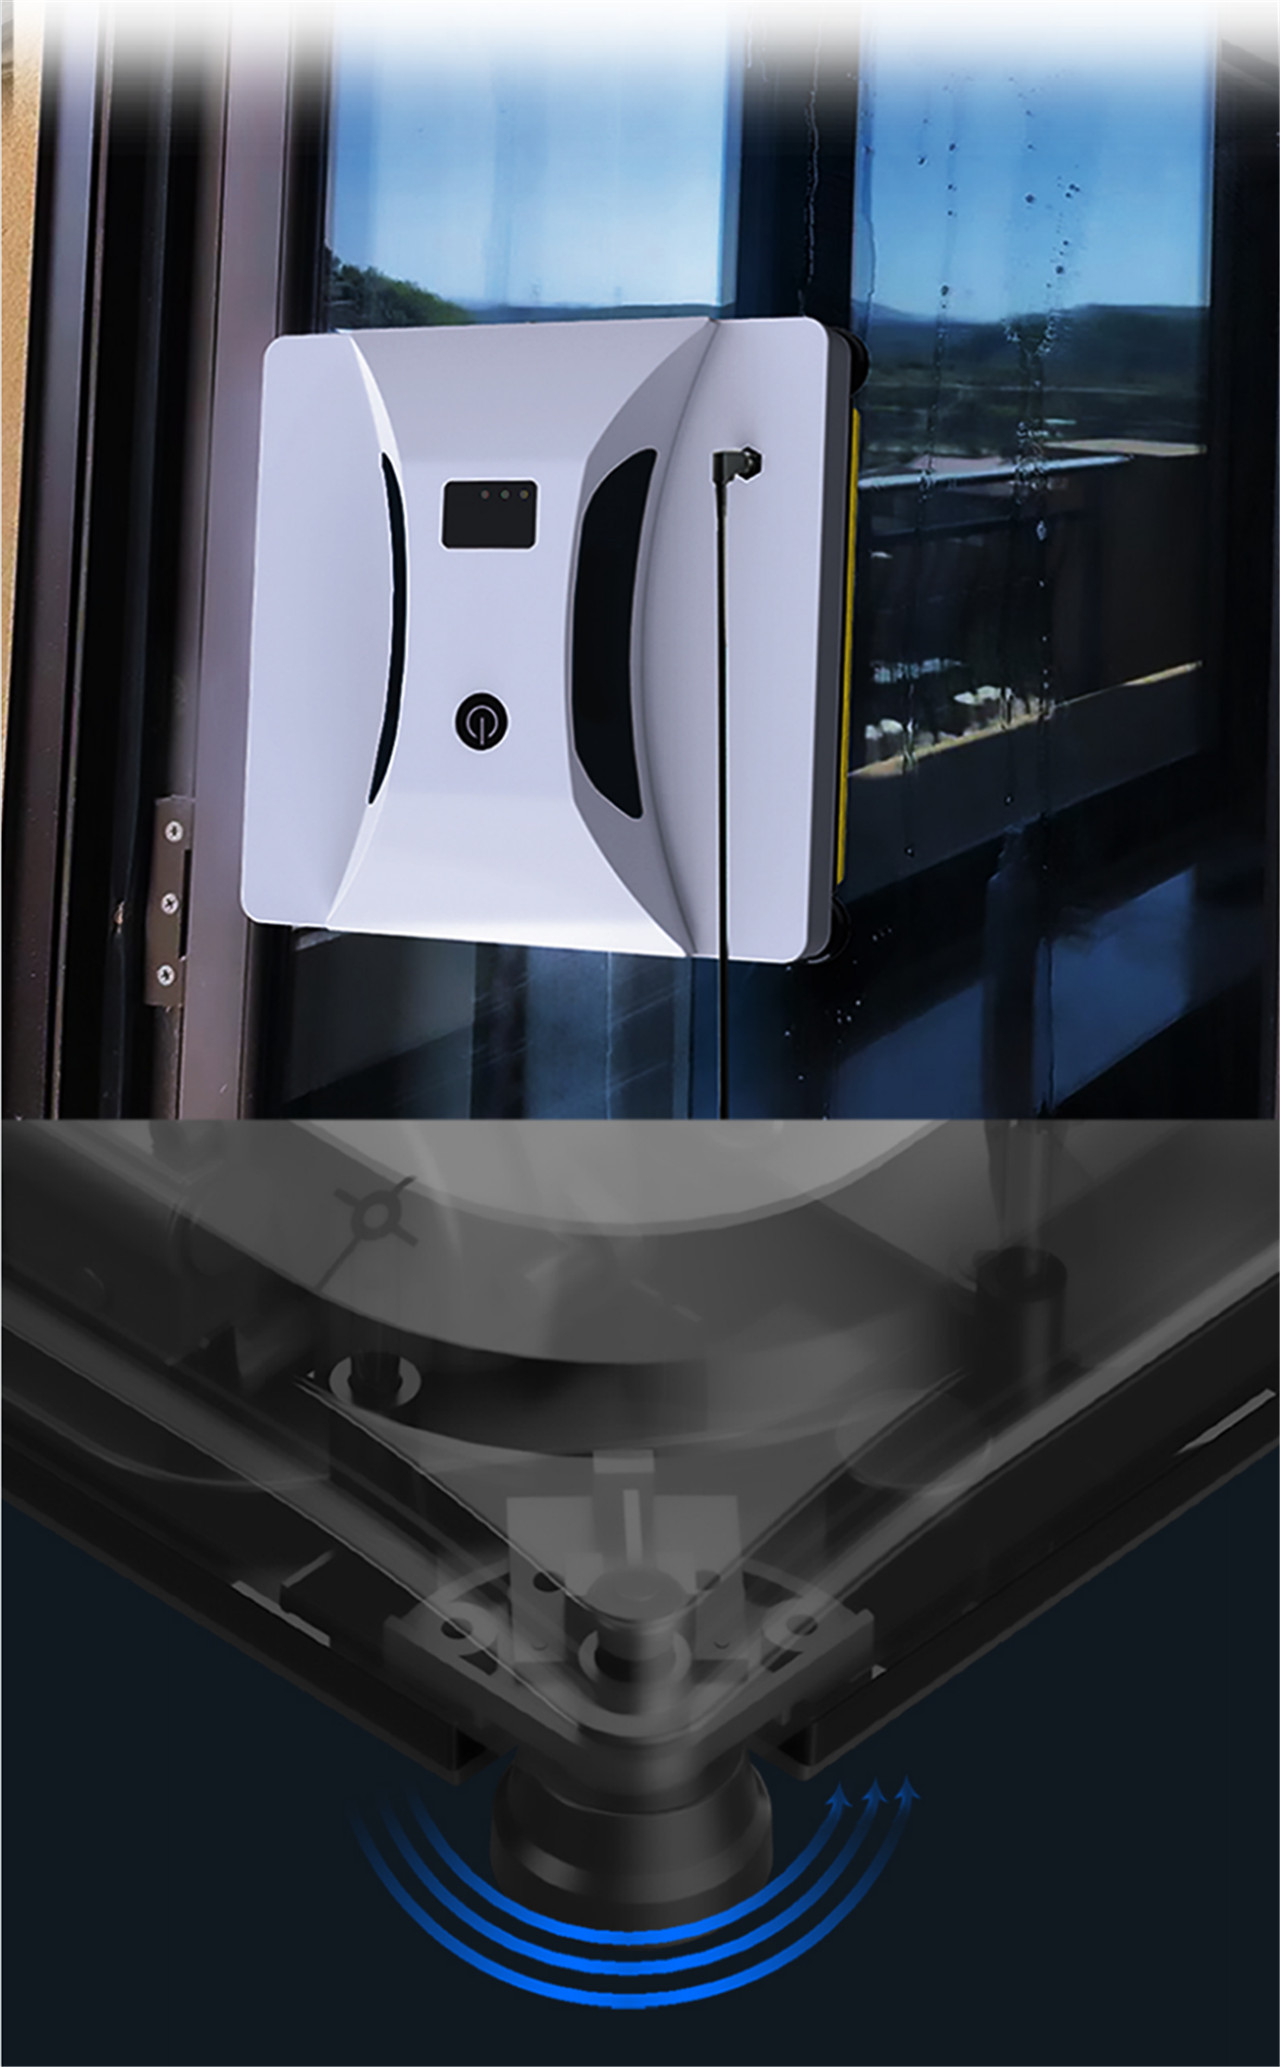 Panavox HCR-05 Smart Window Cleaning Robot Inteligentní automatický čisticí robot pro vnitřní a venkovní okna (5)